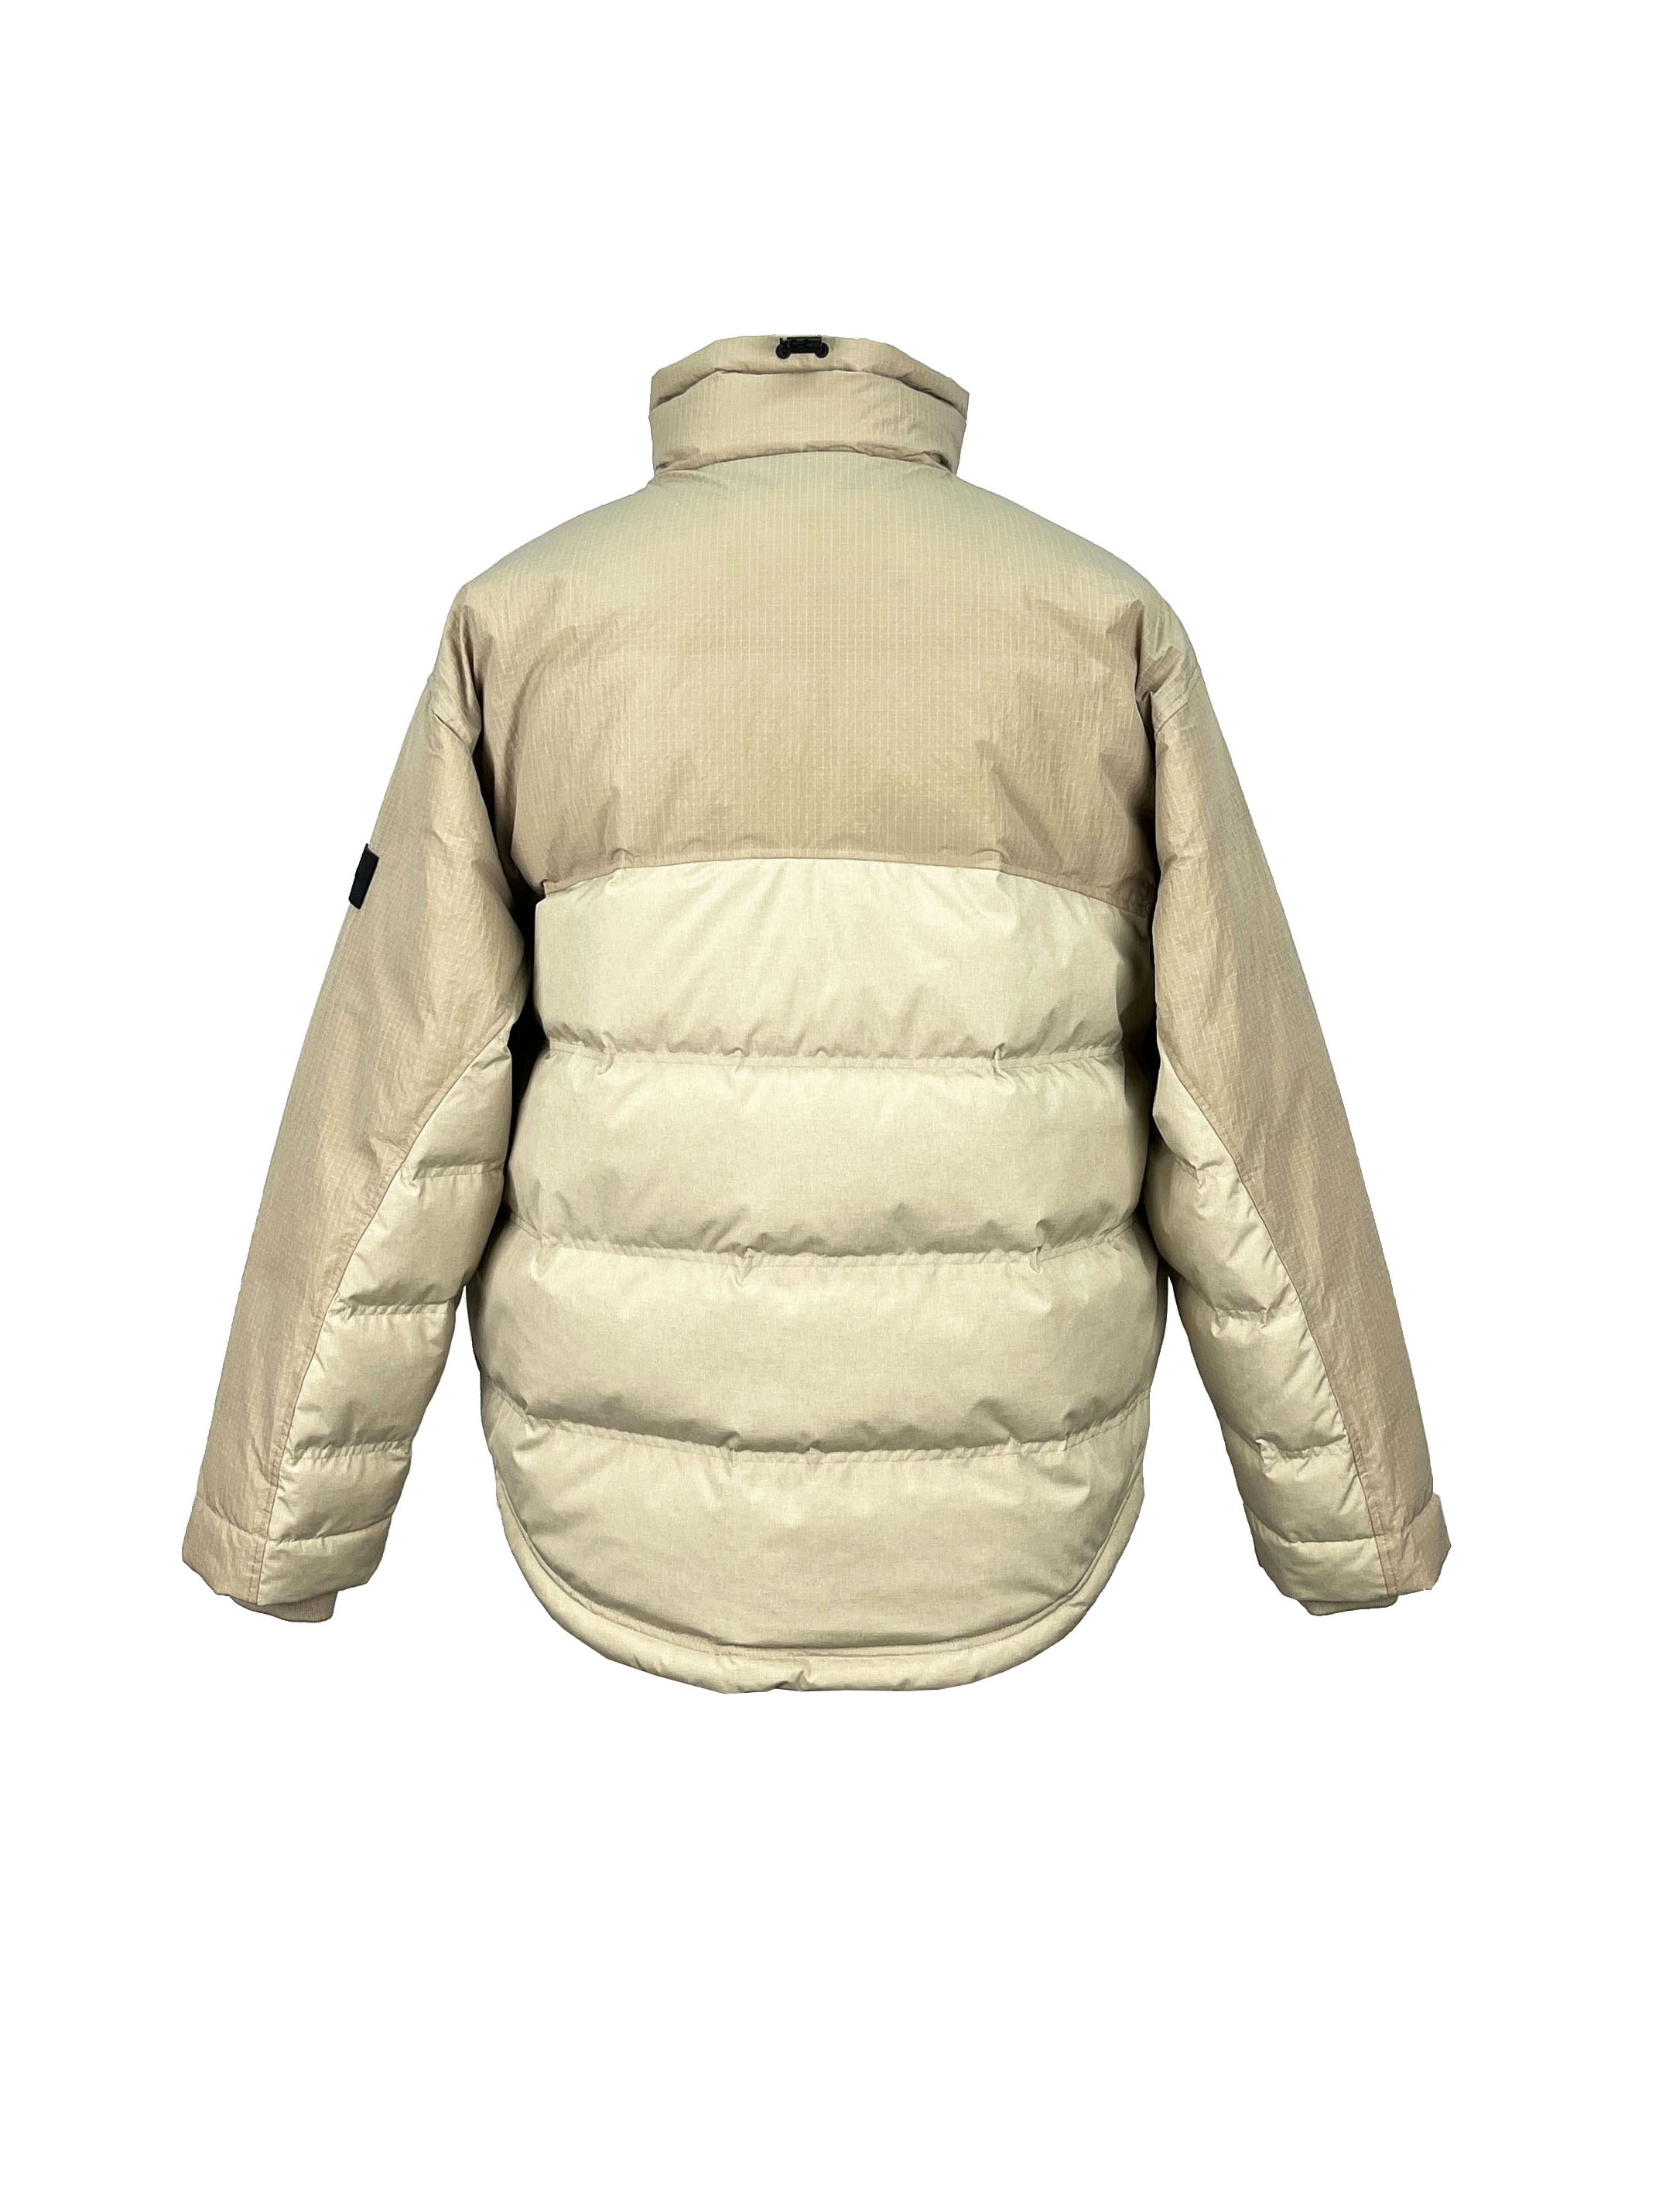 4.padded jacket. (2)